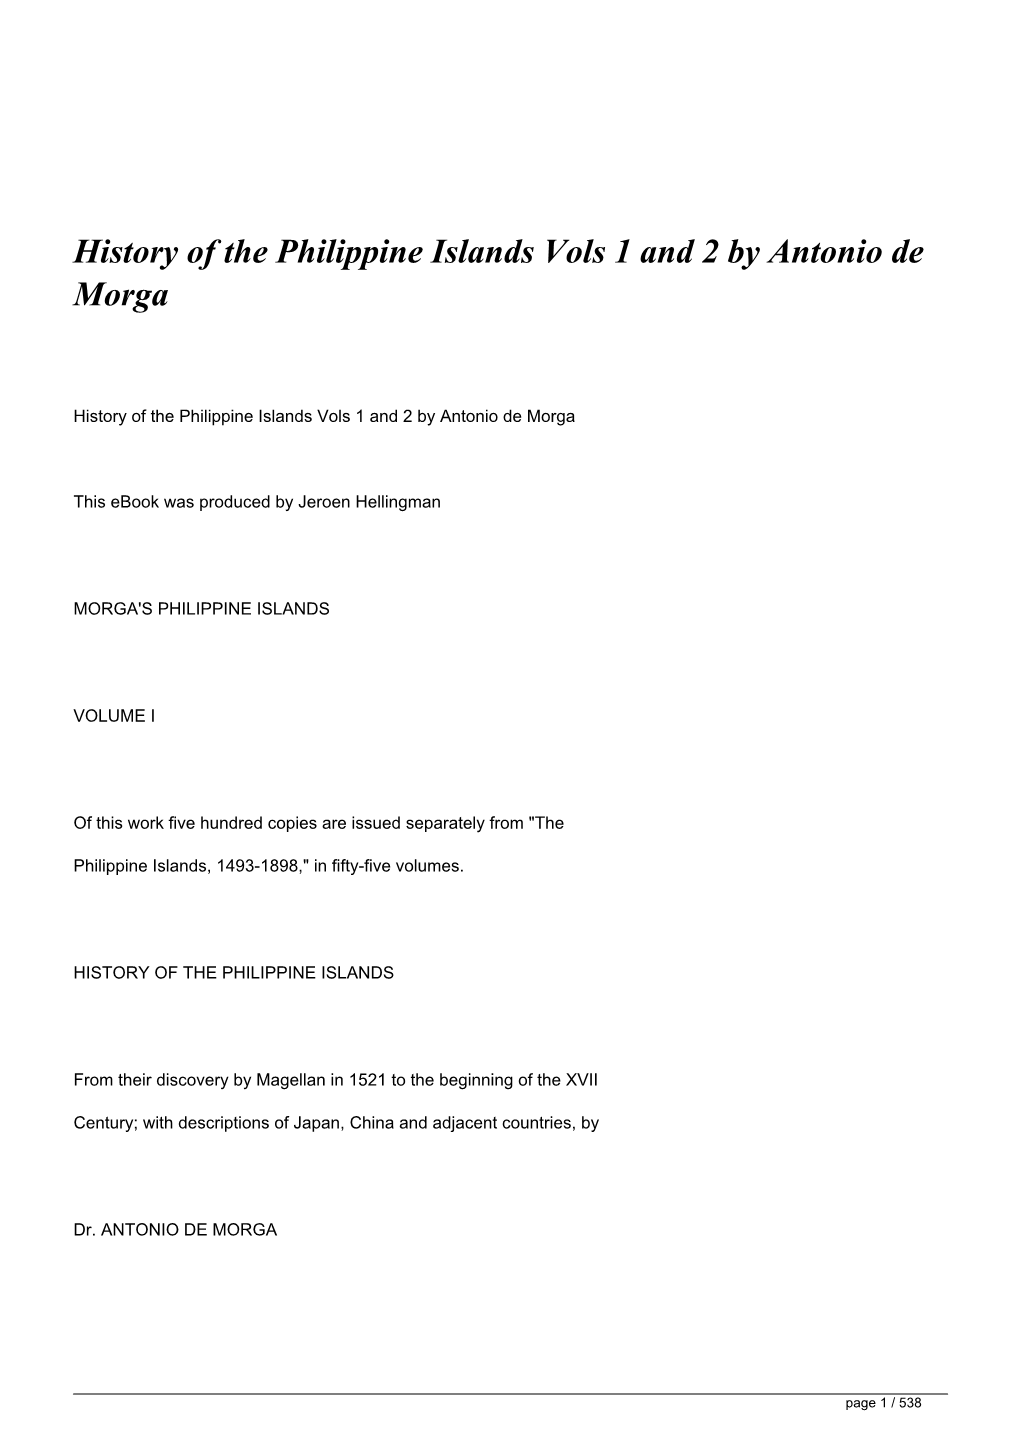 History of the Philippine Islands Vols 1 and 2 by Antonio De Morga